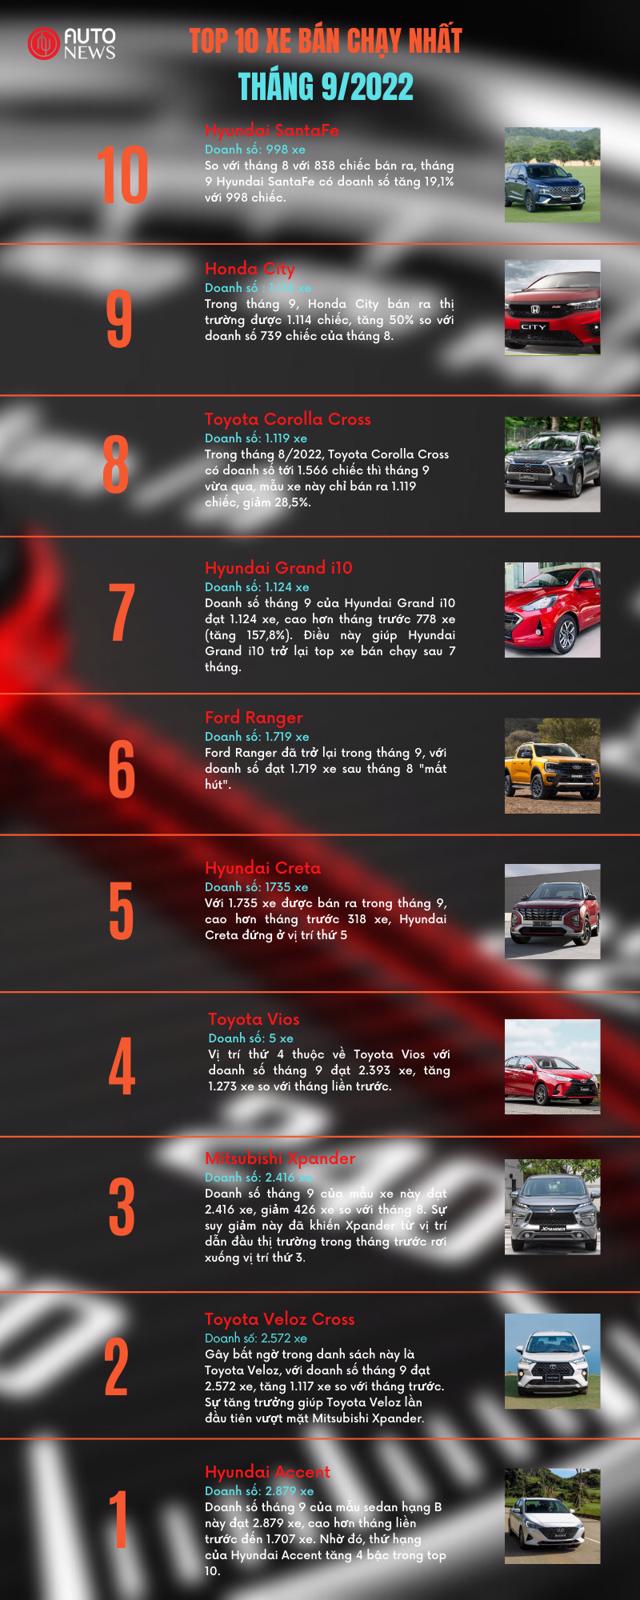 Top 10 ô tô bán chạy nhất tháng 9/2022 - Ảnh 1